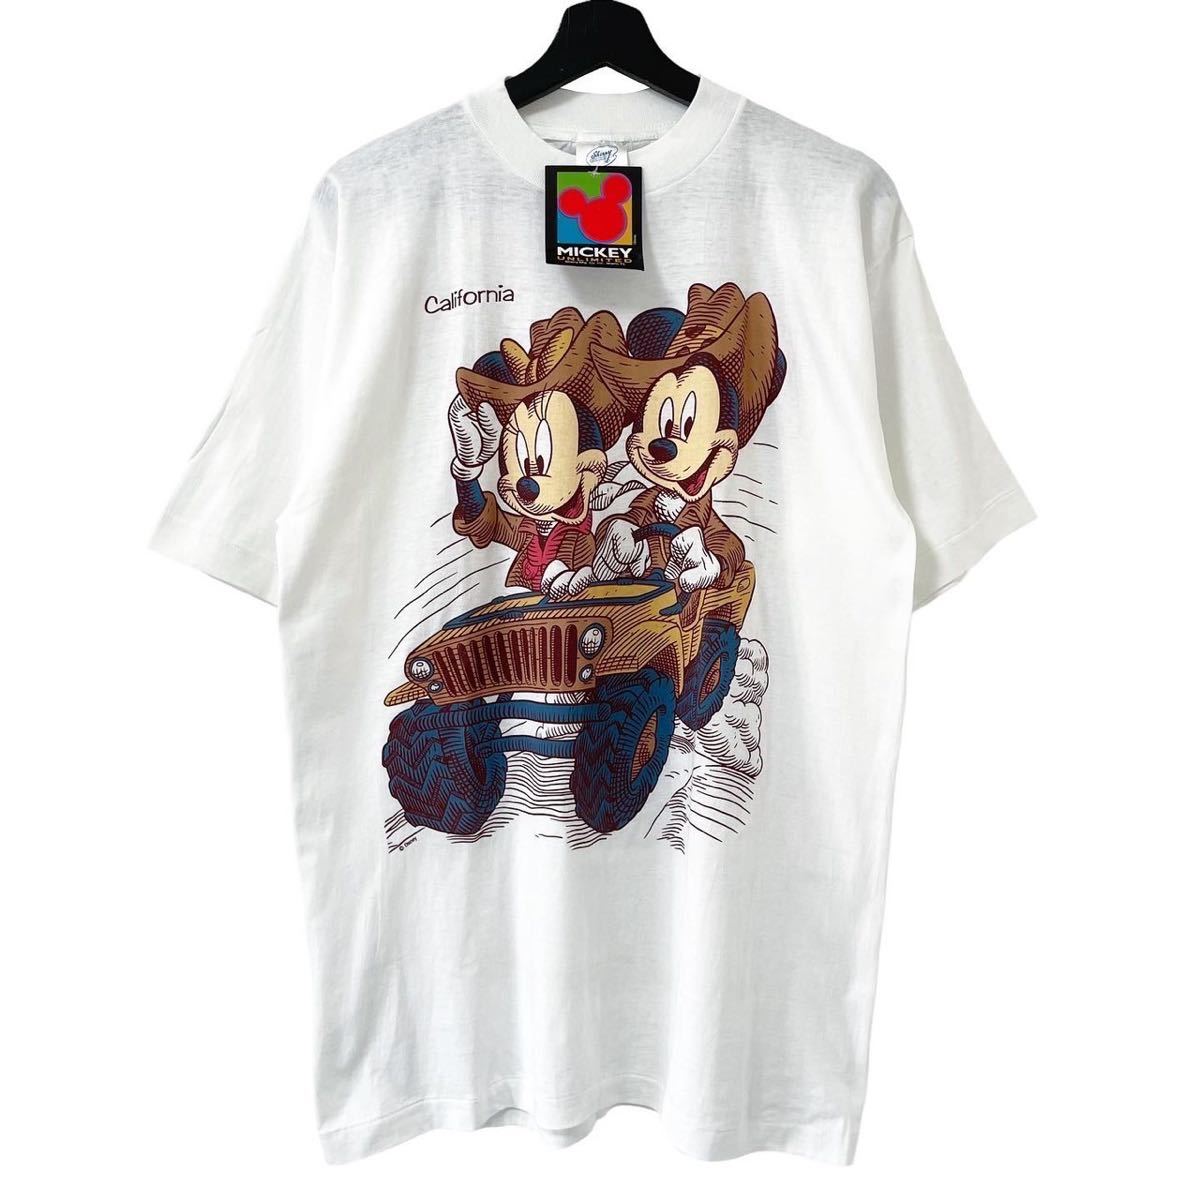 品質一番の Tシャツ 翡翠』浮世絵プリント 哥麿『扇屋 喜多川 半袖